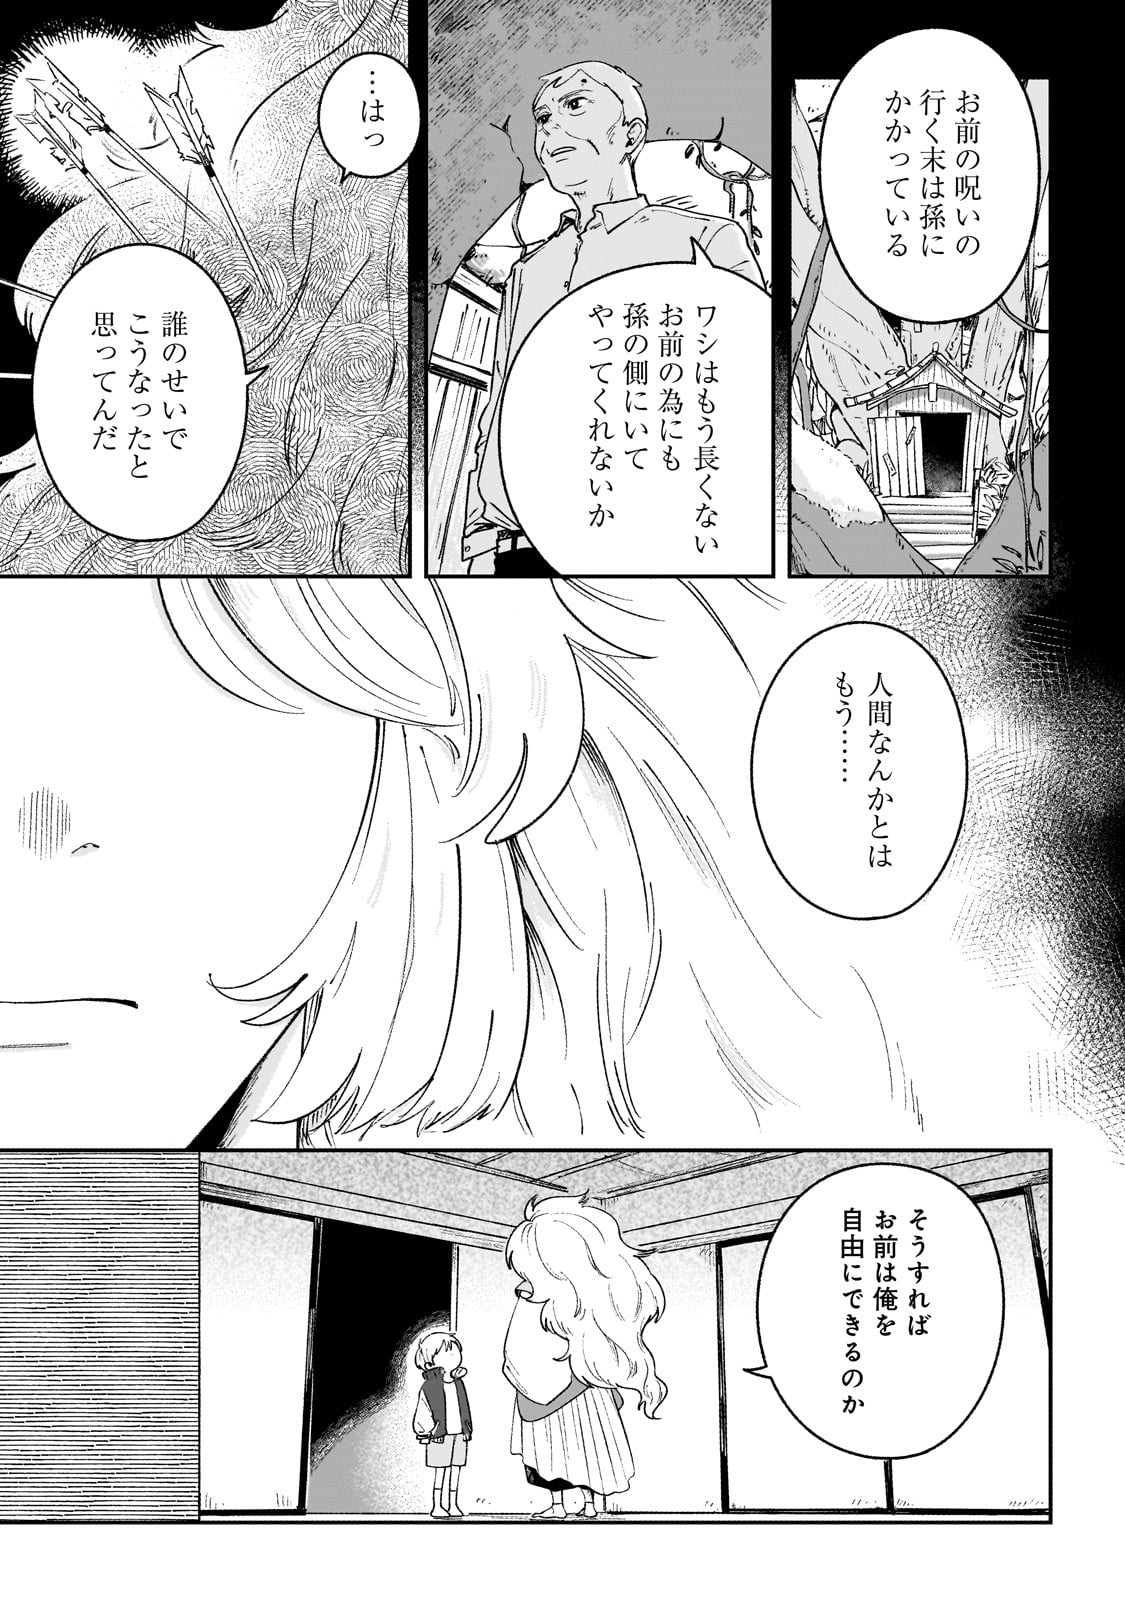 Boku to Ayakashi no 365 Nichi - Chapter 1 - Page 25